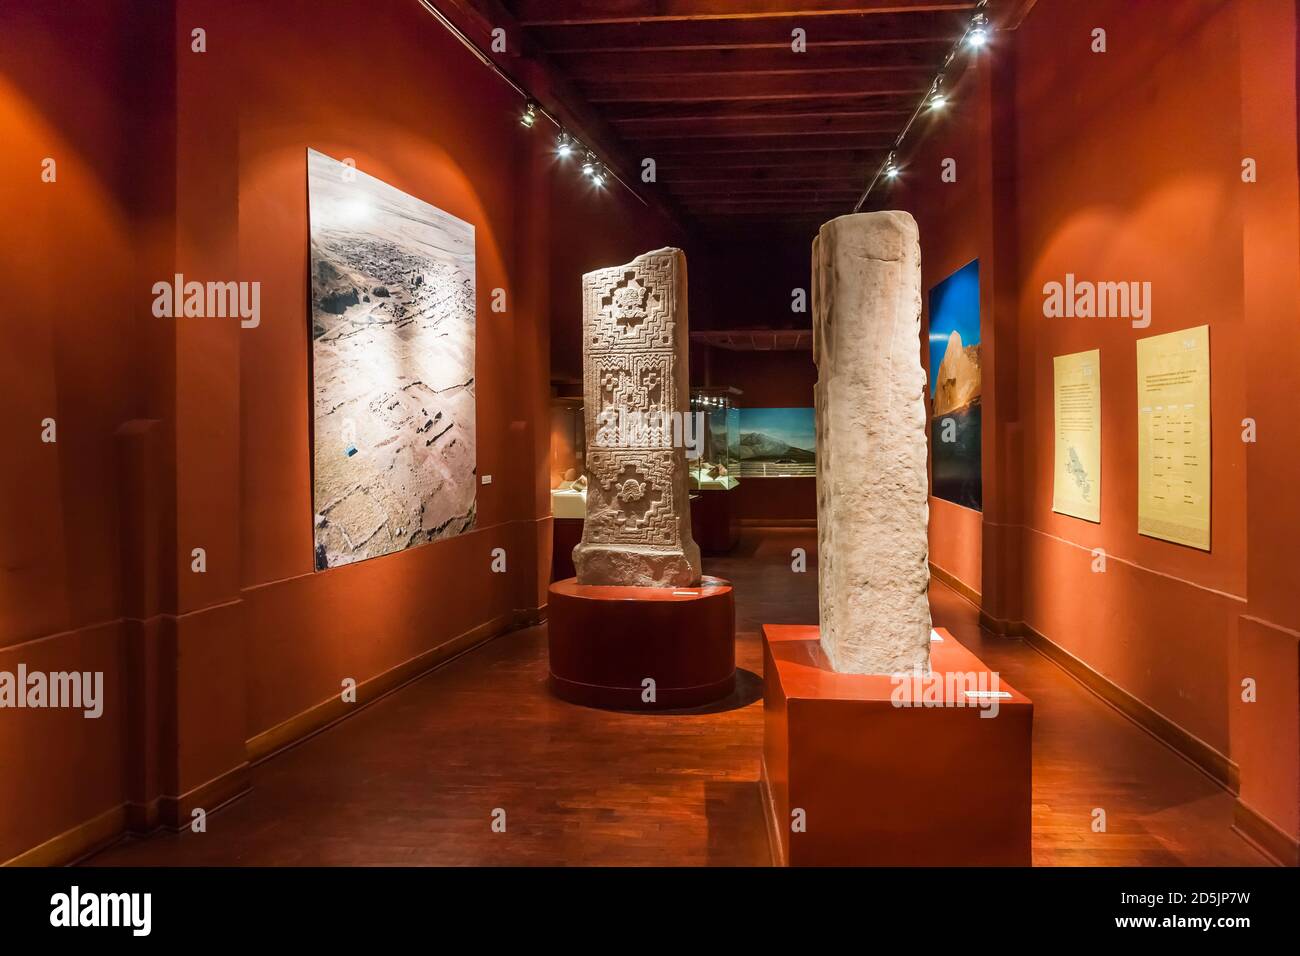 Galerie de collection de la période formative, et stelas, 'Musée national d'archéologie, d'anthropologie et d'histoire du Pérou', Lima, Pérou, Amérique du Sud Banque D'Images